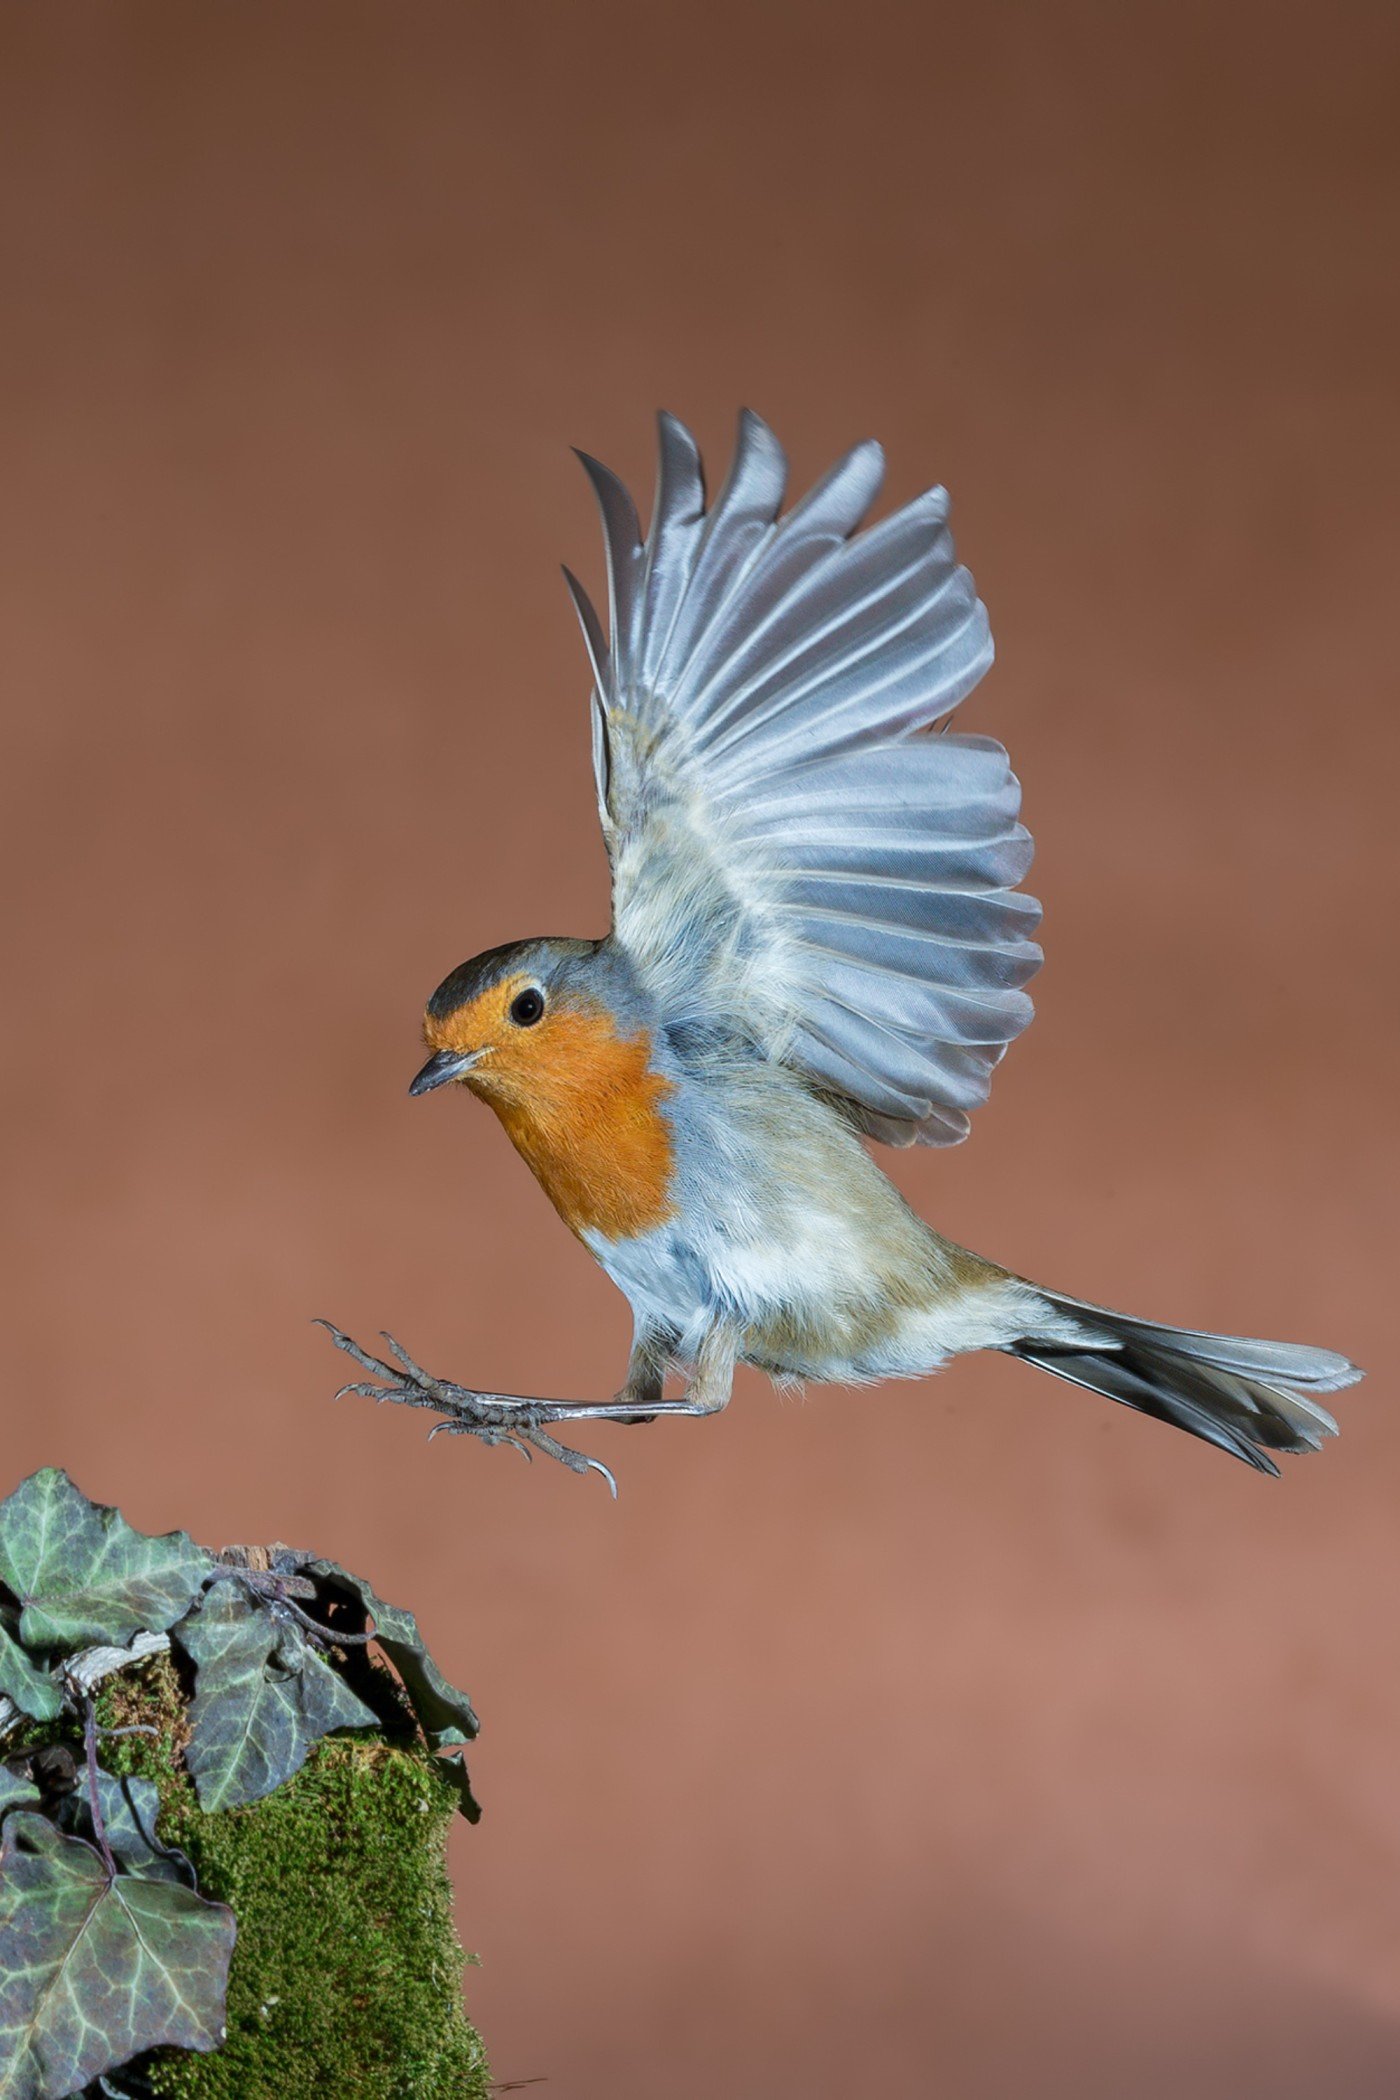 Robin bird in flight